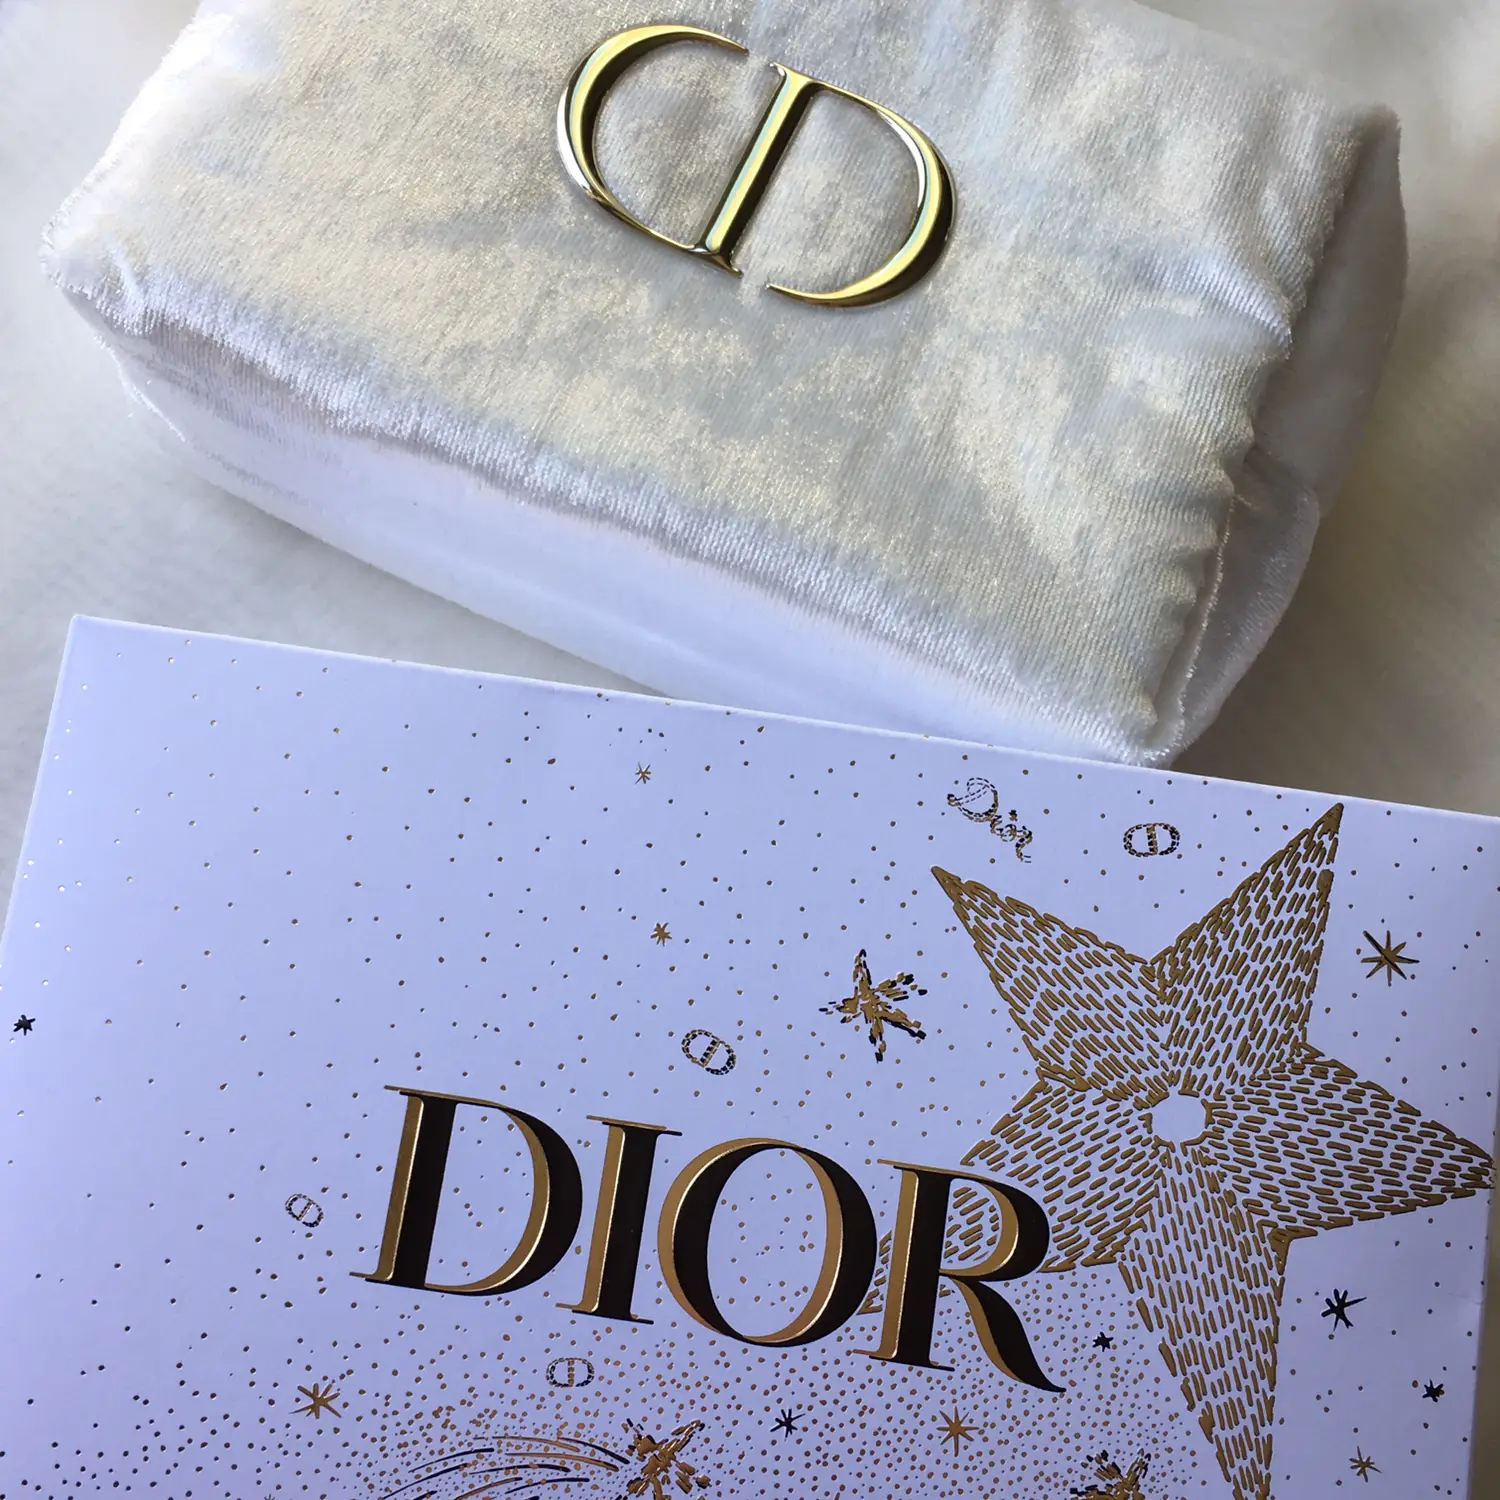 Dior｢カプチュールトータルホリデー+おまけ｣ - スキンケア、基礎化粧品